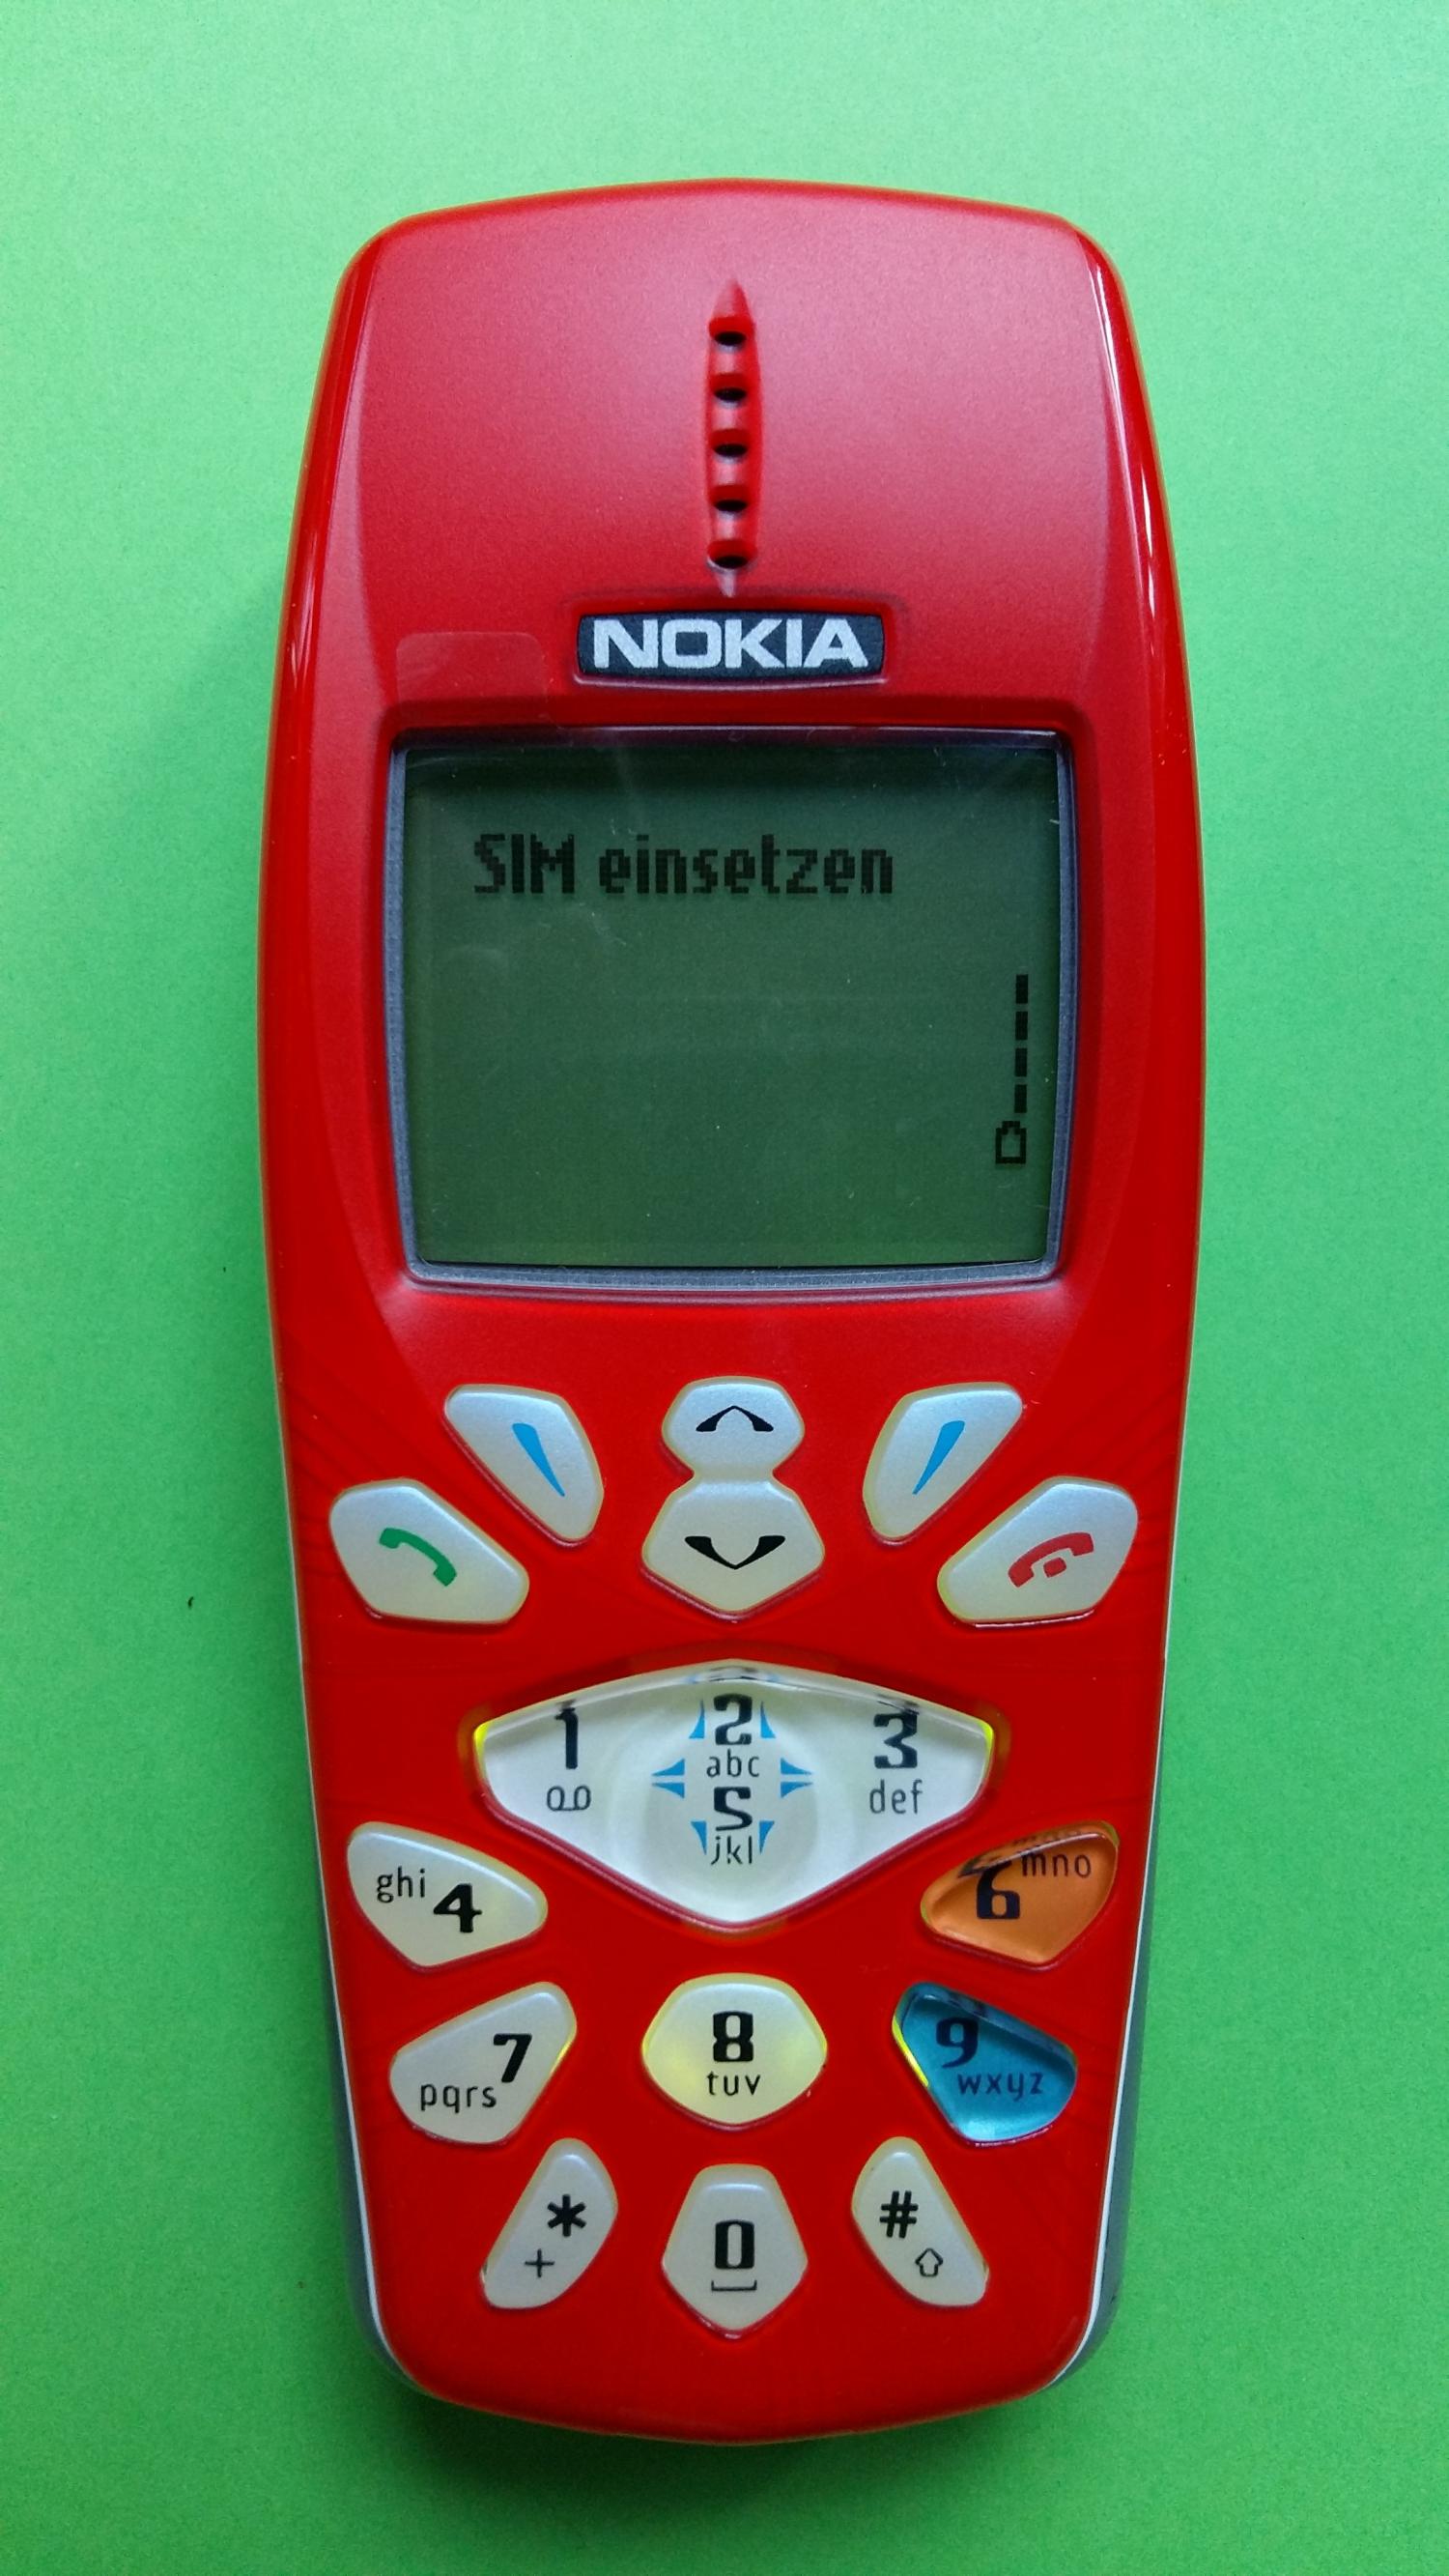 image-7309264-Nokia 3510 (2)1.jpg